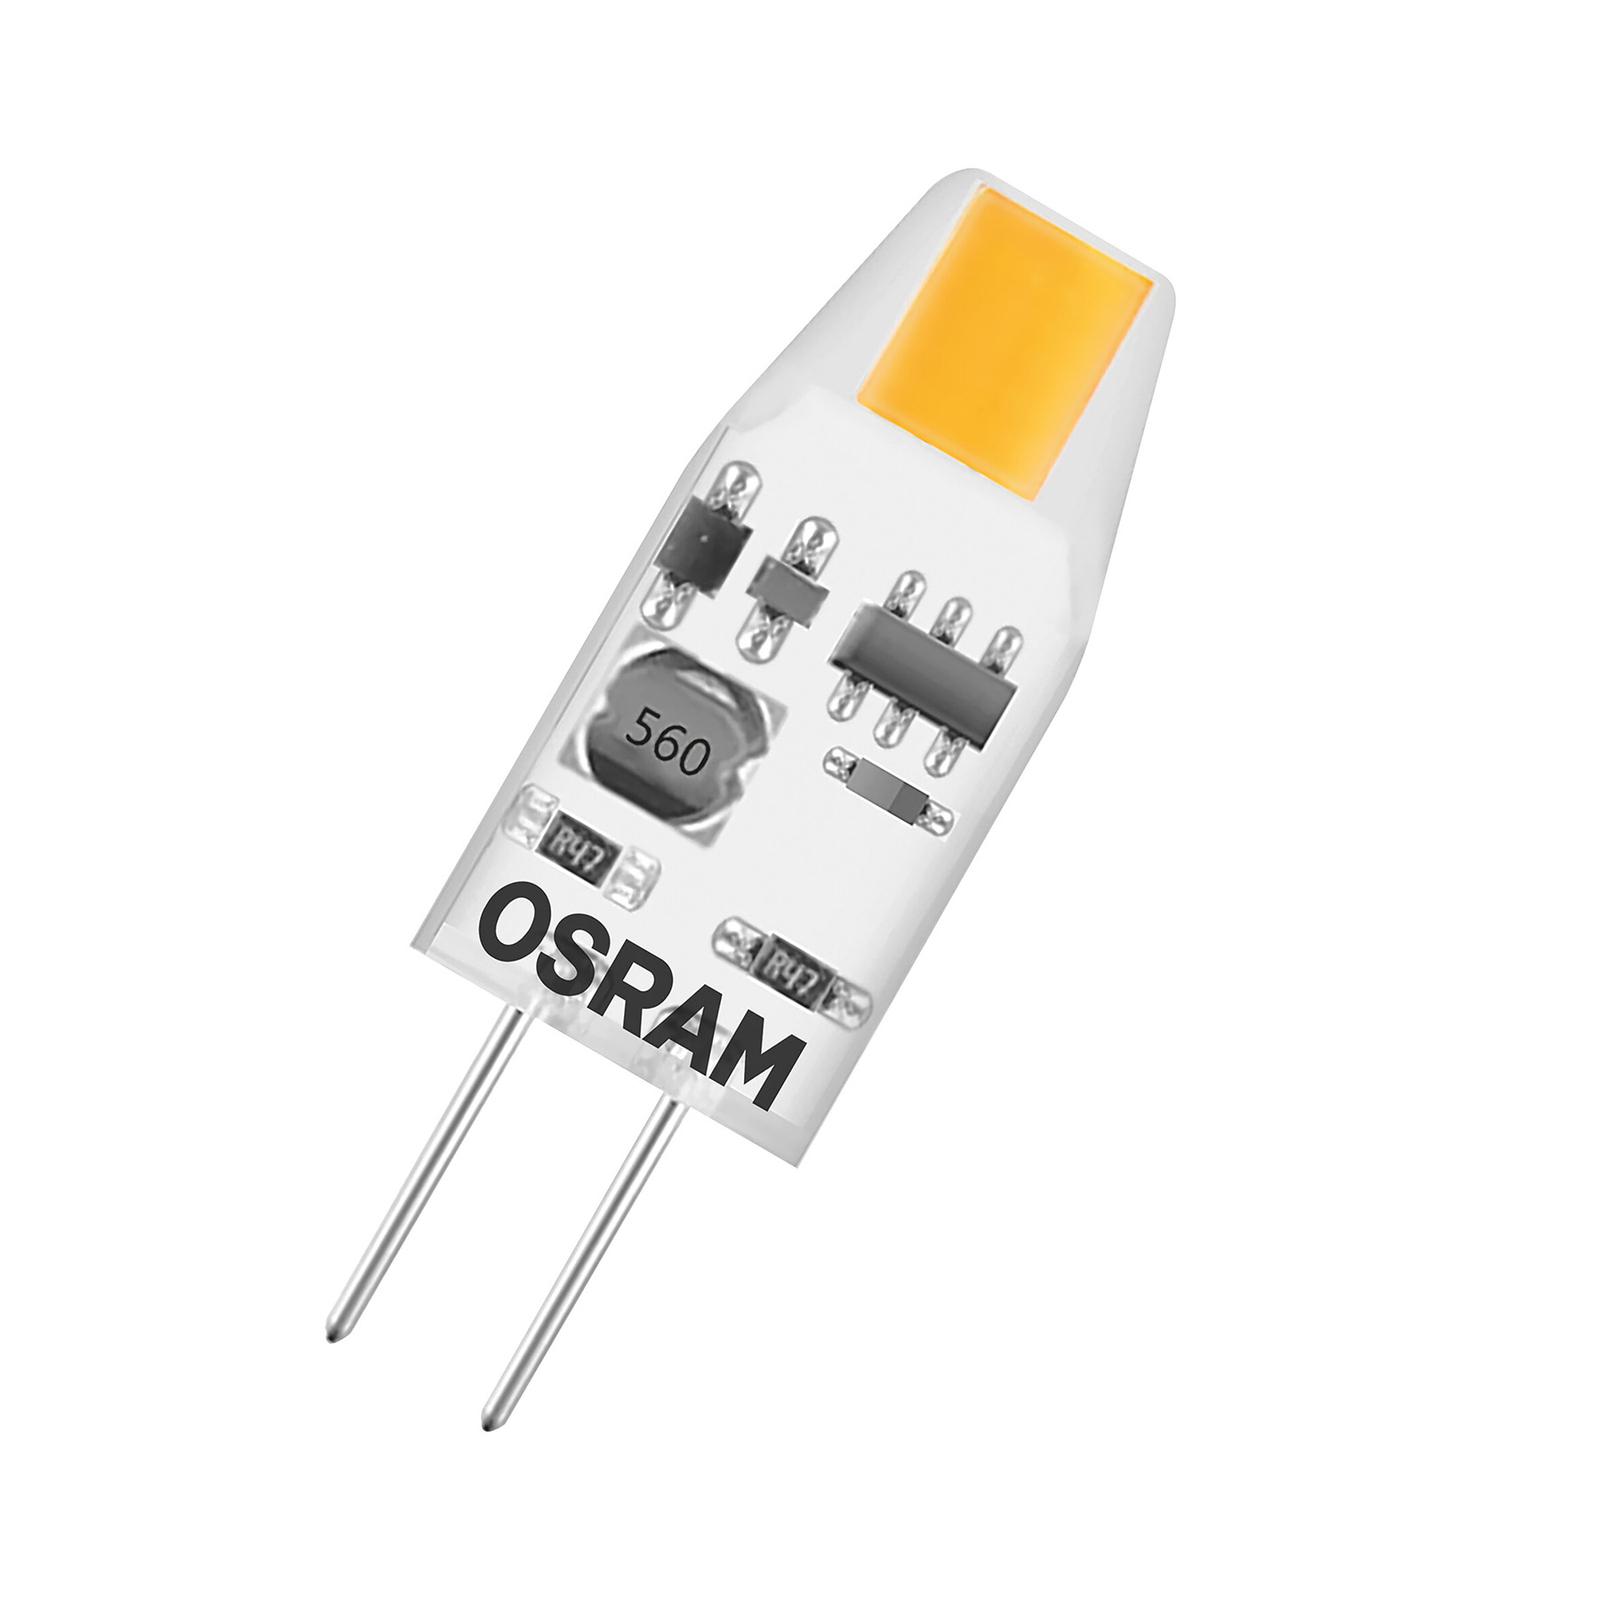 OSRAM PIN Micro LED žárovka G4 1W 100lm 2 700K